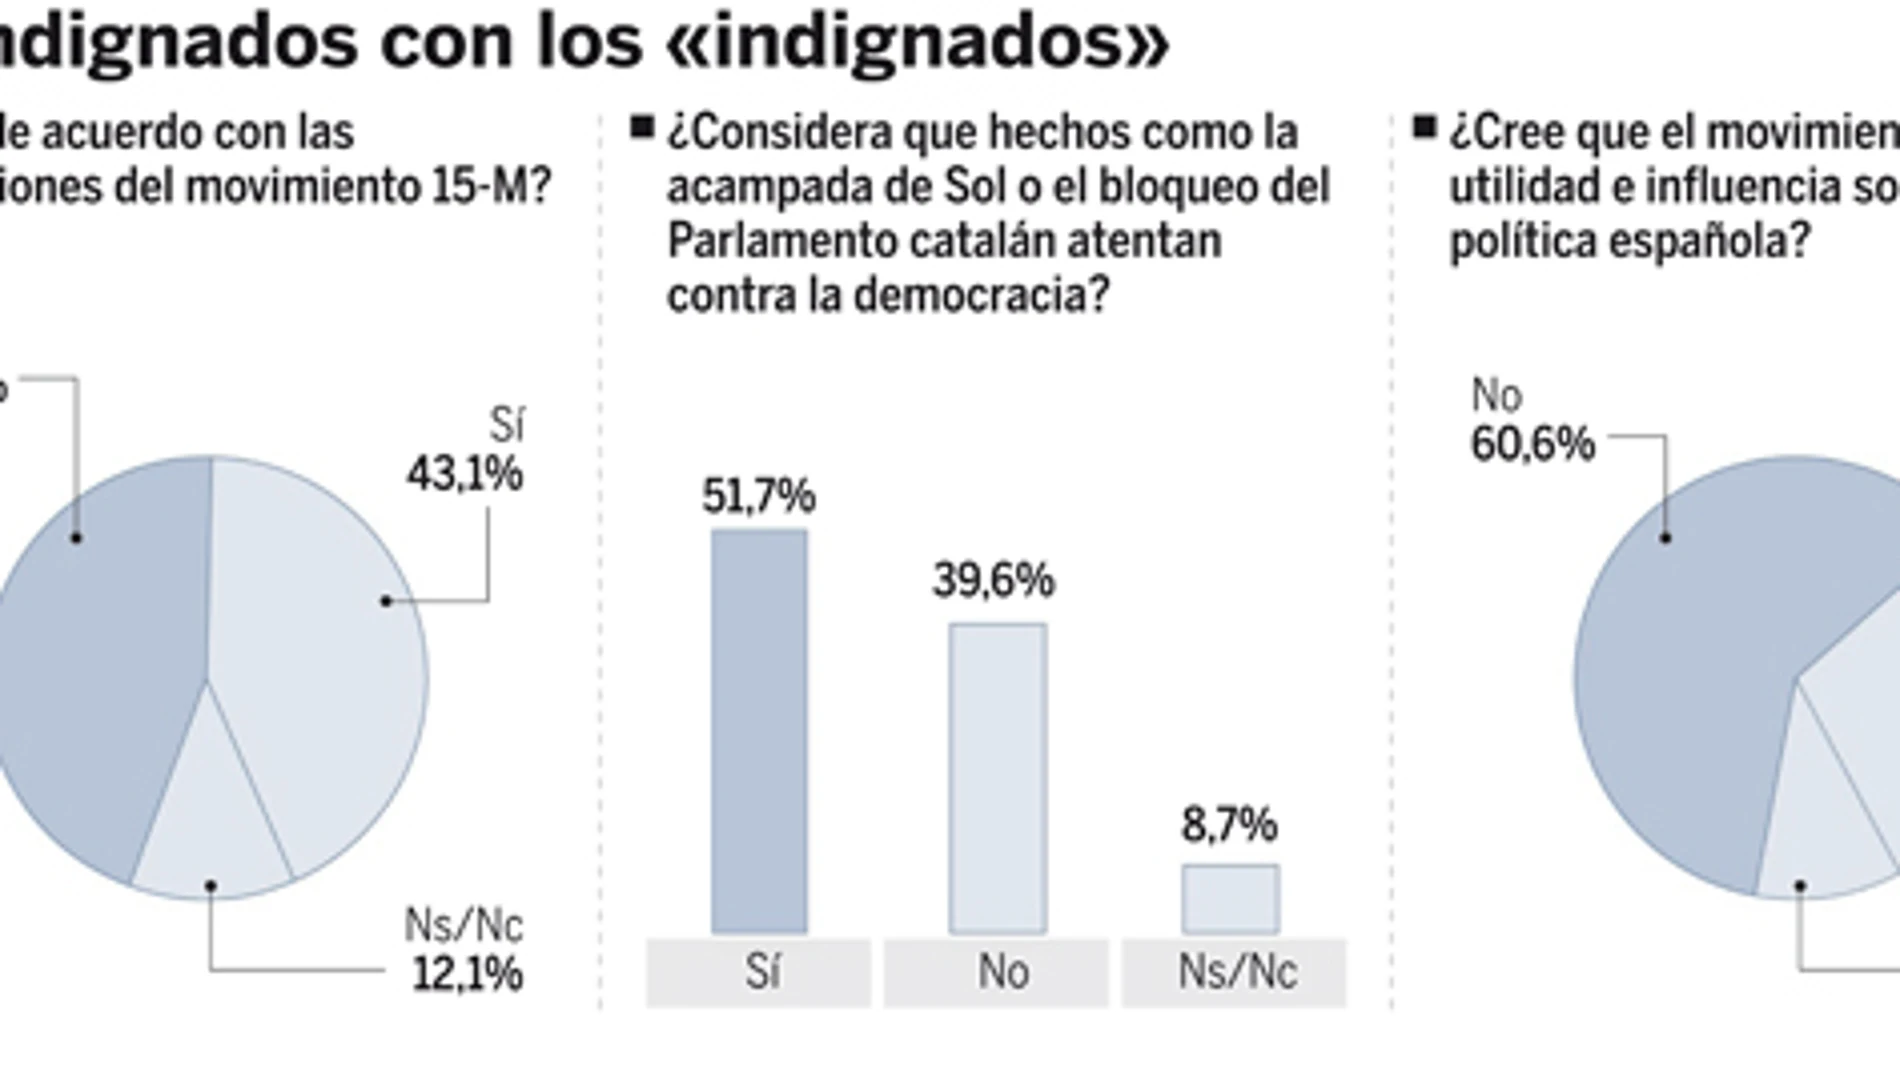 Más de la mitad de los españoles tacha de antidemocrático el 15-M. Vea el GRÁFICO COMPLETO en documentos adjuntos